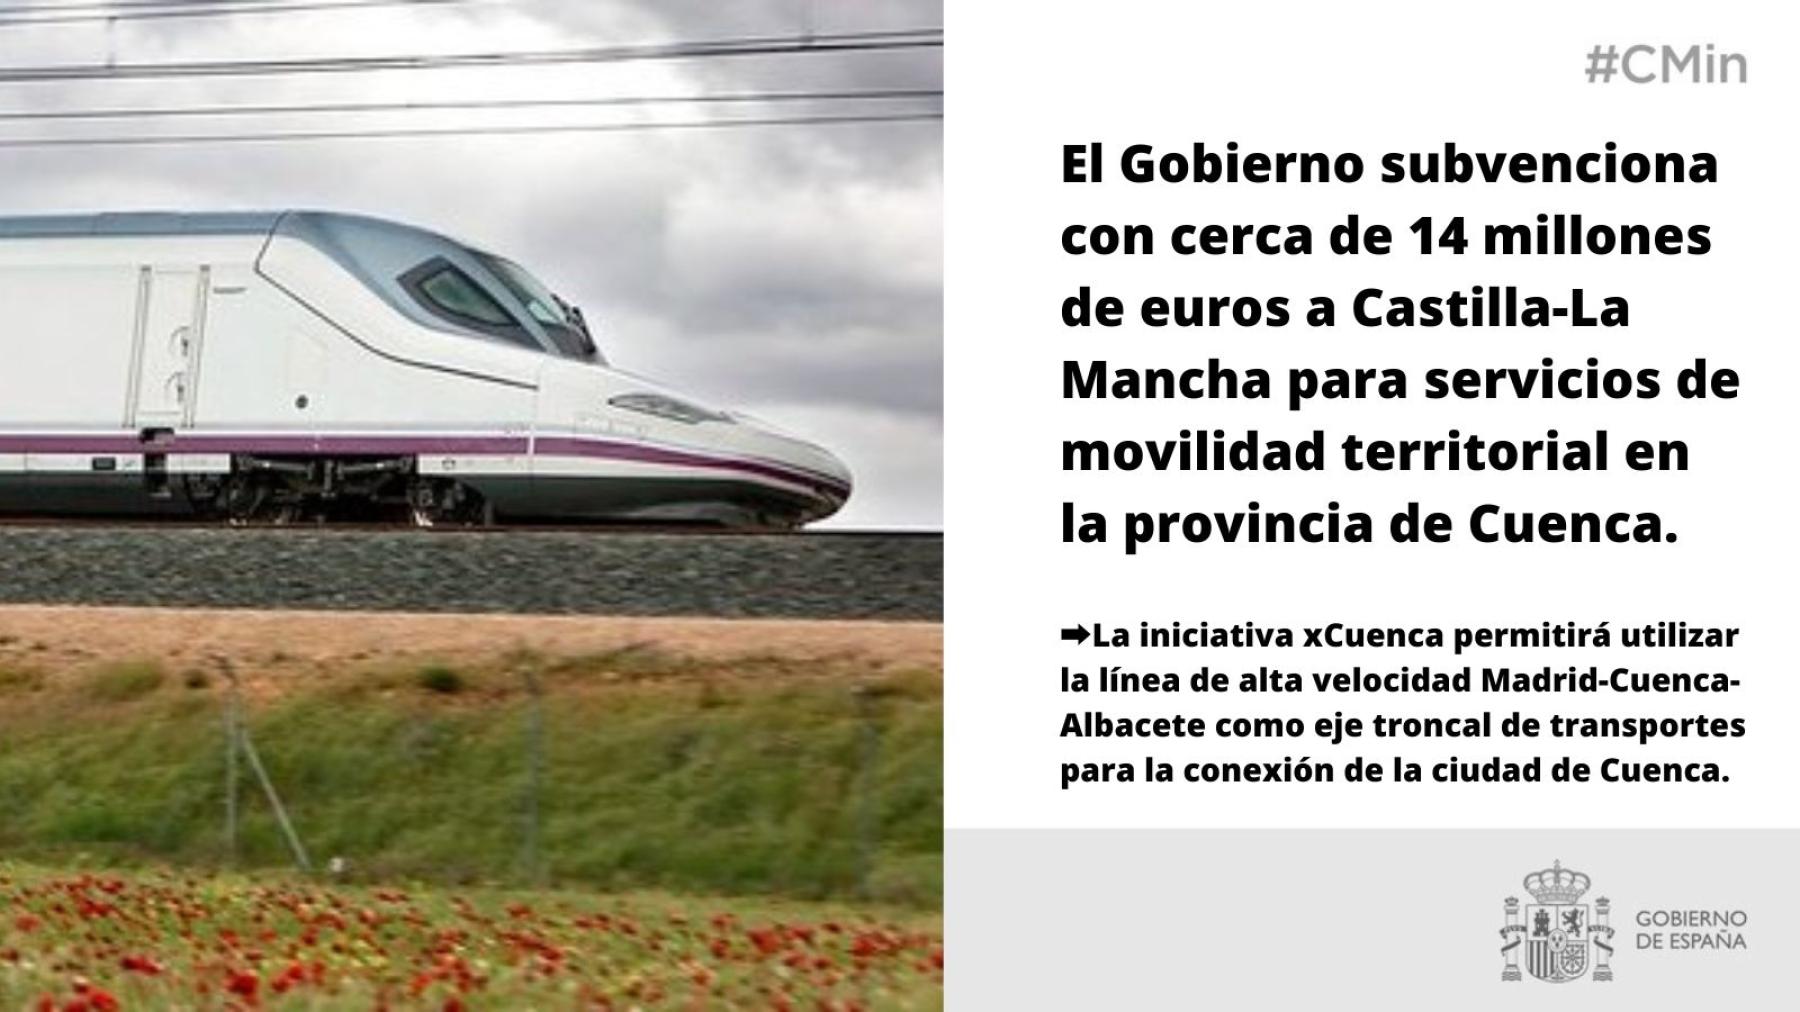 El Gobierno subvenciona con cerca de 14 millones de euros a Castilla-La Mancha para servicios de movilidad territorial en la provincia de Cuenca